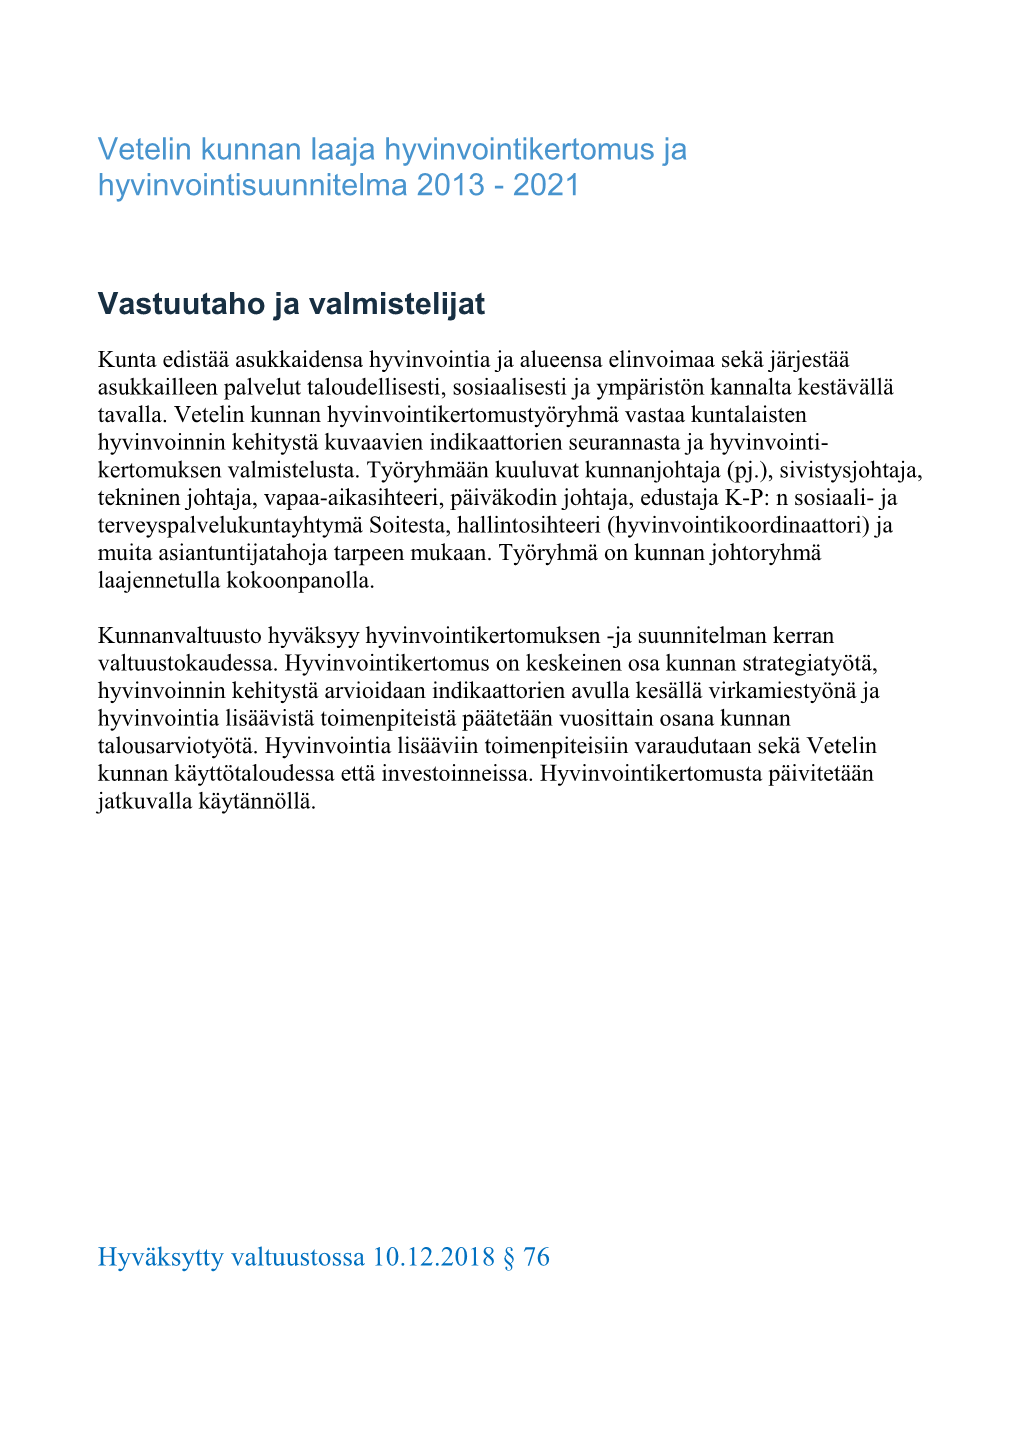 Hyvinvointikertomus Ja Hyvinvointisuunnitelma 2013 - 2021